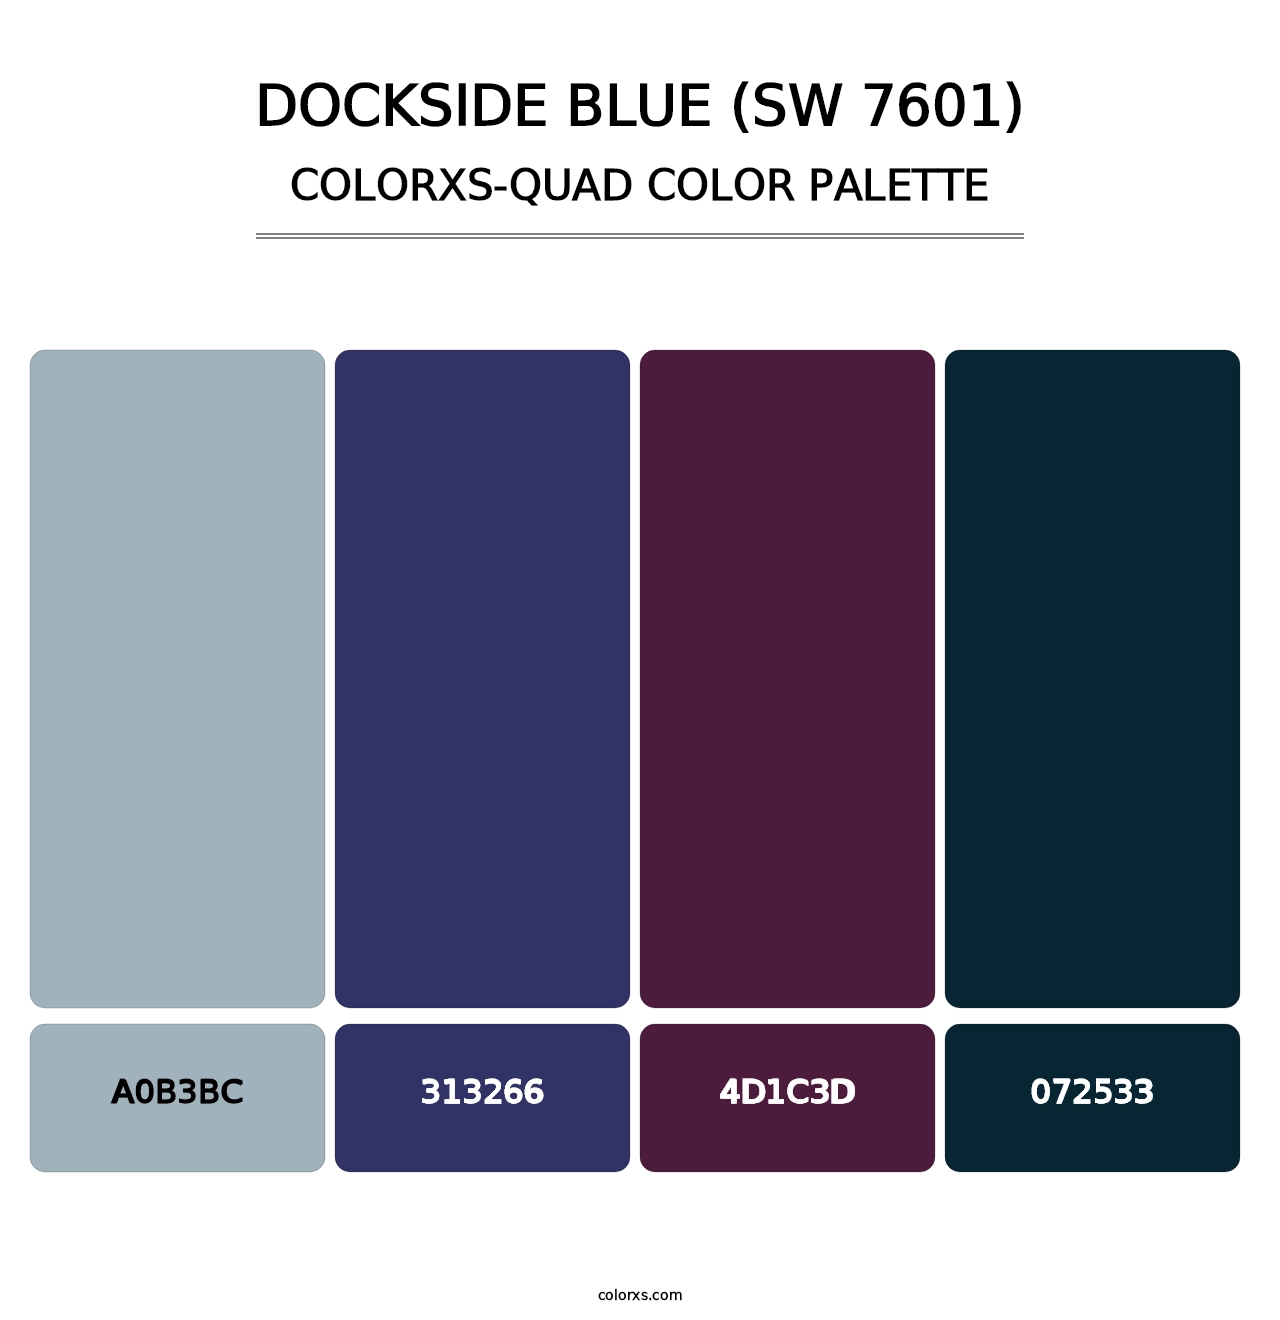 Dockside Blue (SW 7601) - Colorxs Quad Palette